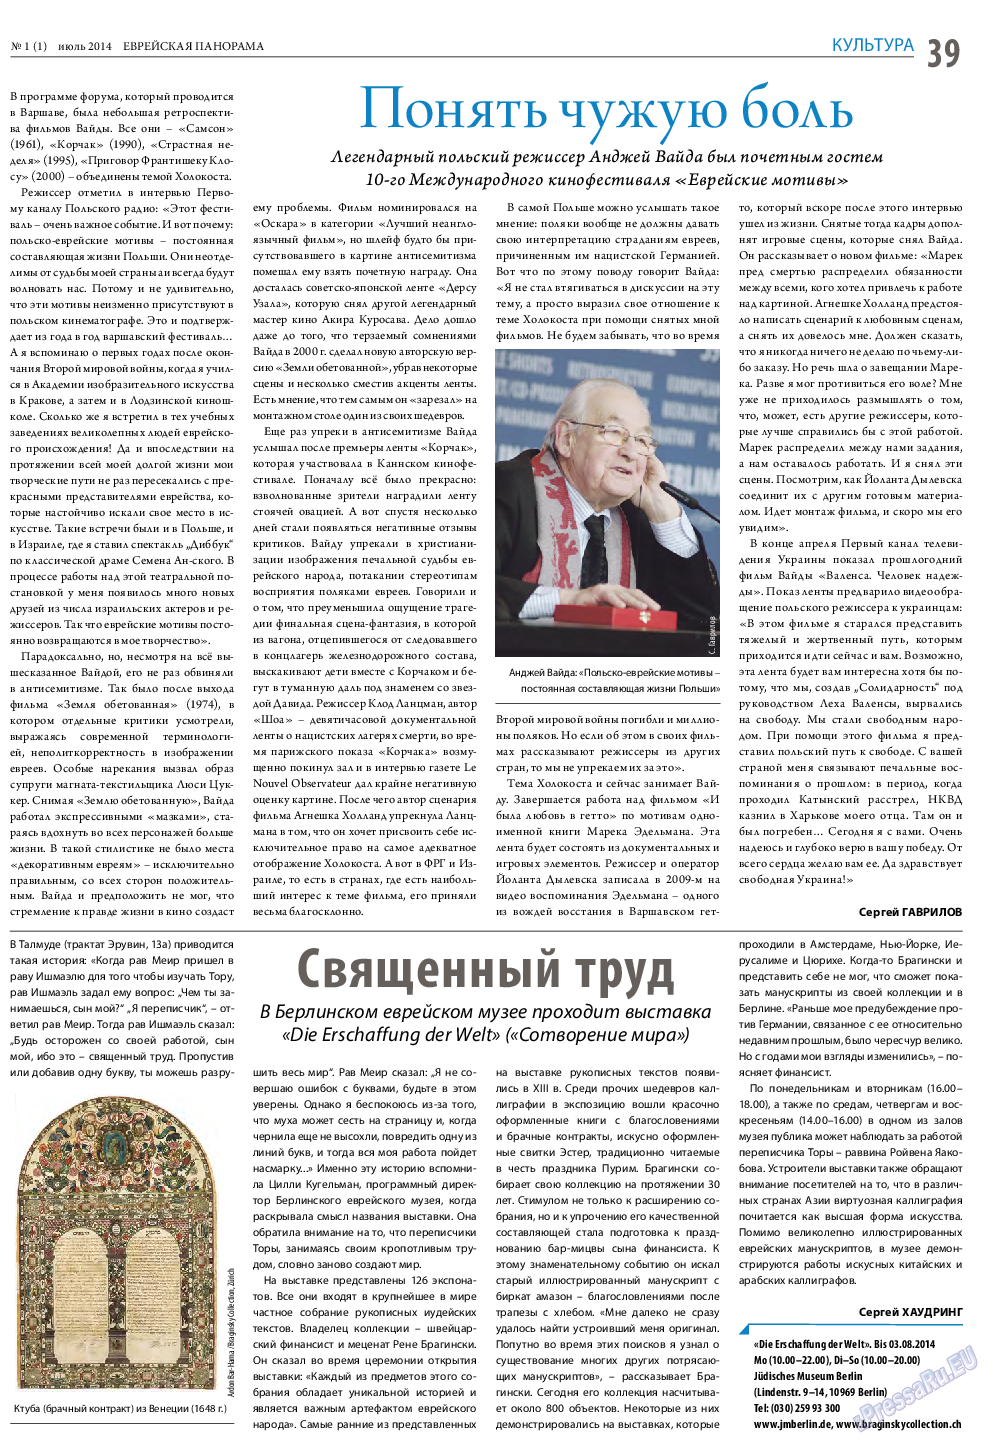 Еврейская панорама (газета). 2014 год, номер 1, стр. 39